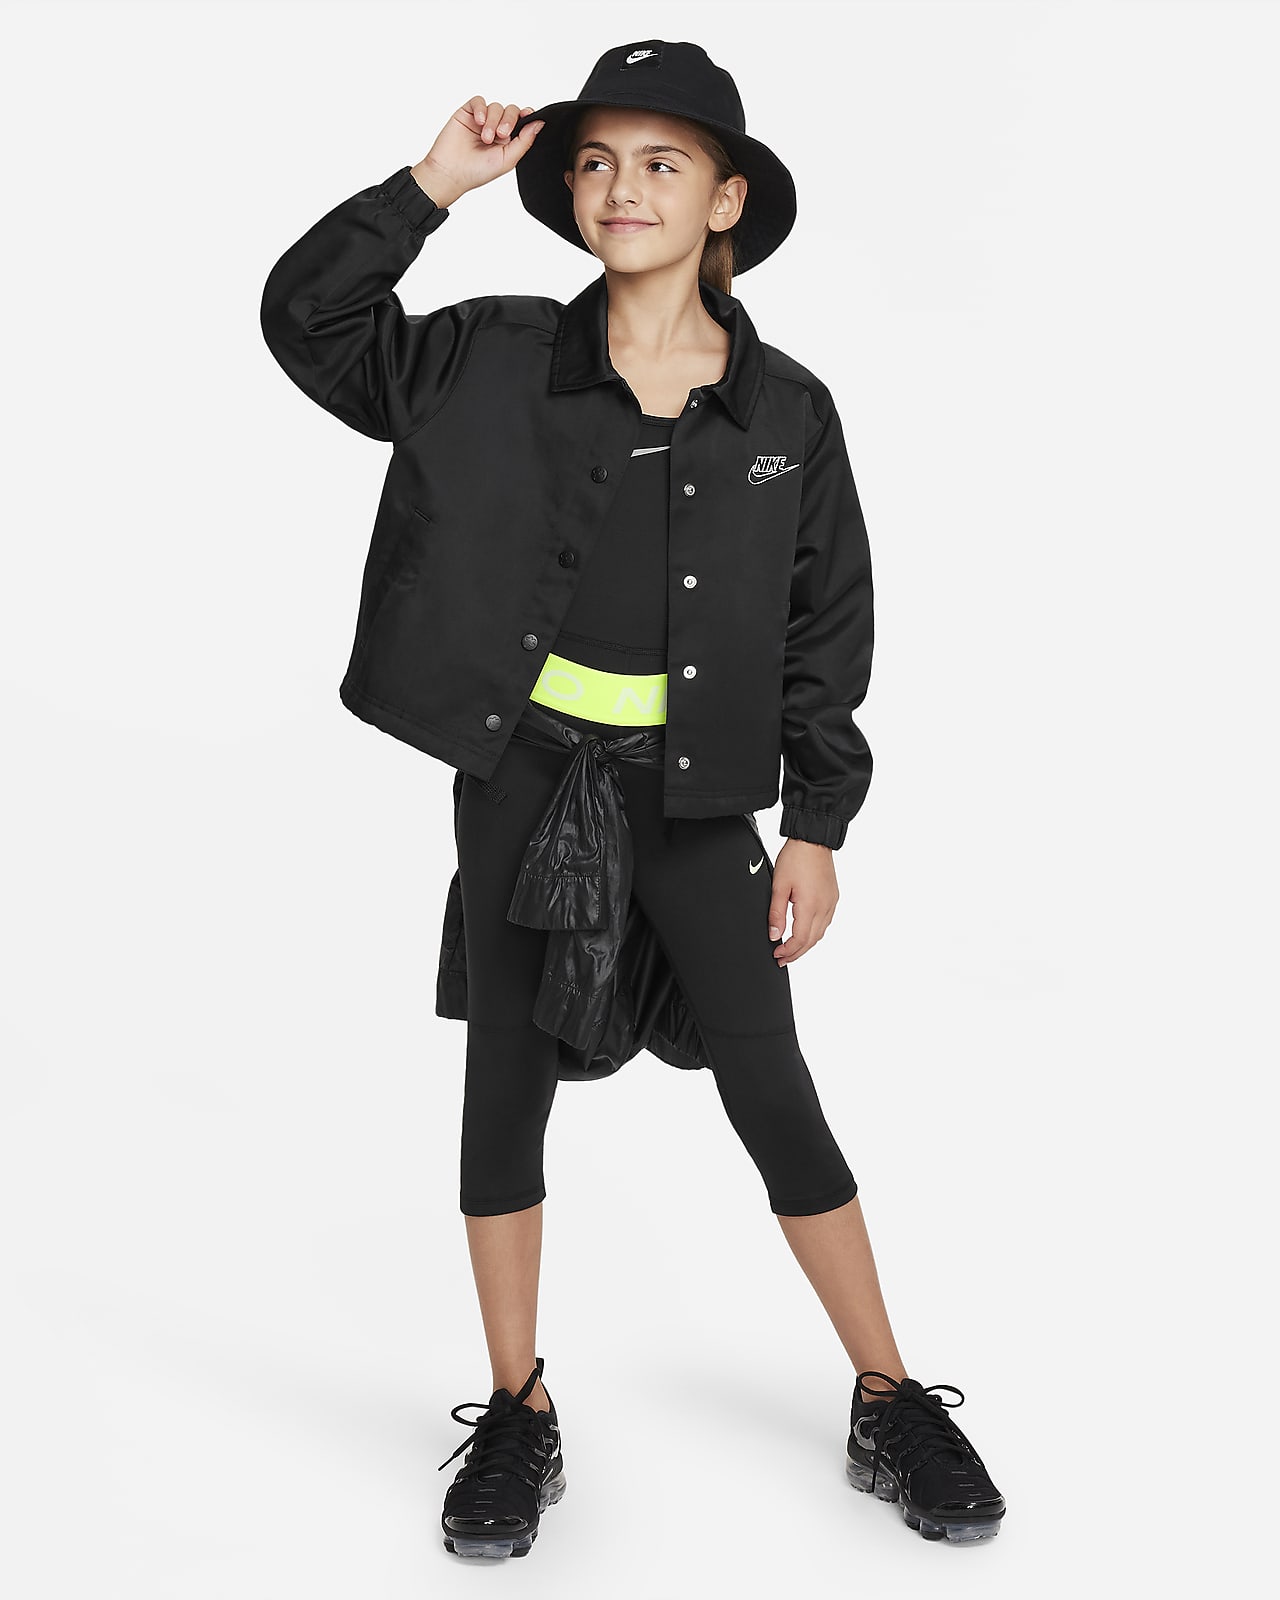 Nike PRO Girl's capri leggings: for sale at 24.99€ on